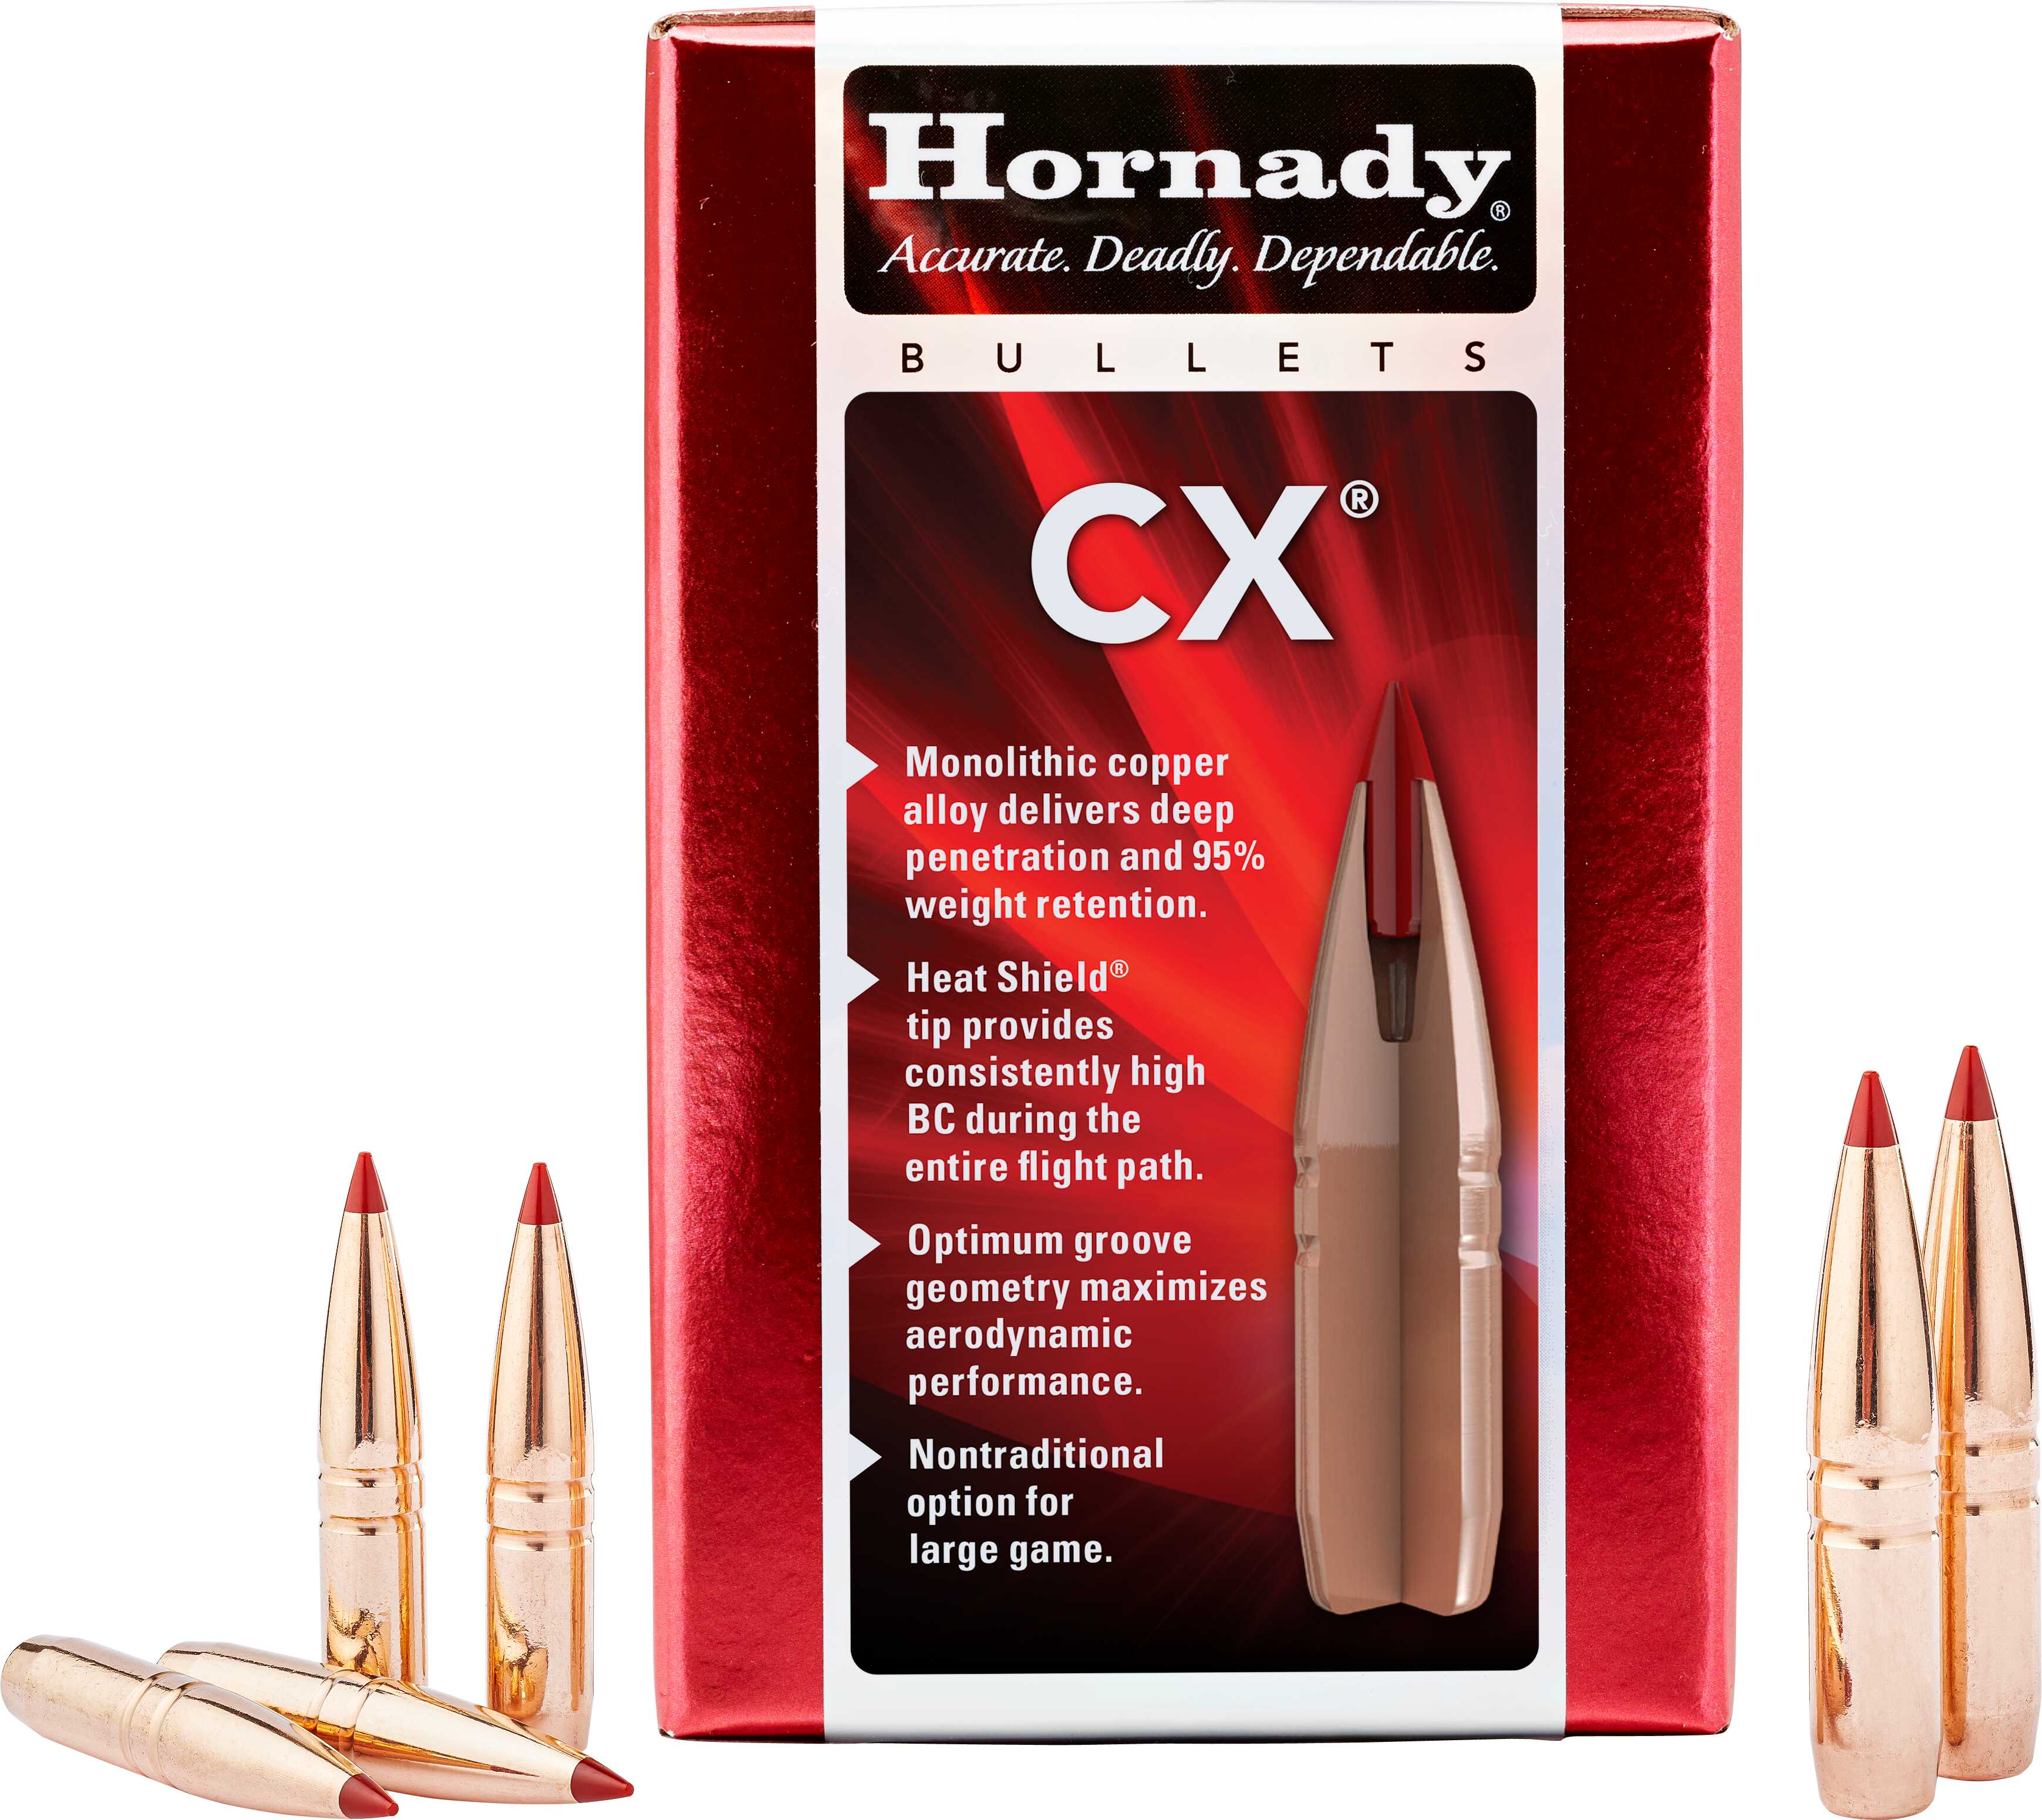 Hornady Bullets 338 Cal .355 225 Gr CX 50 Count